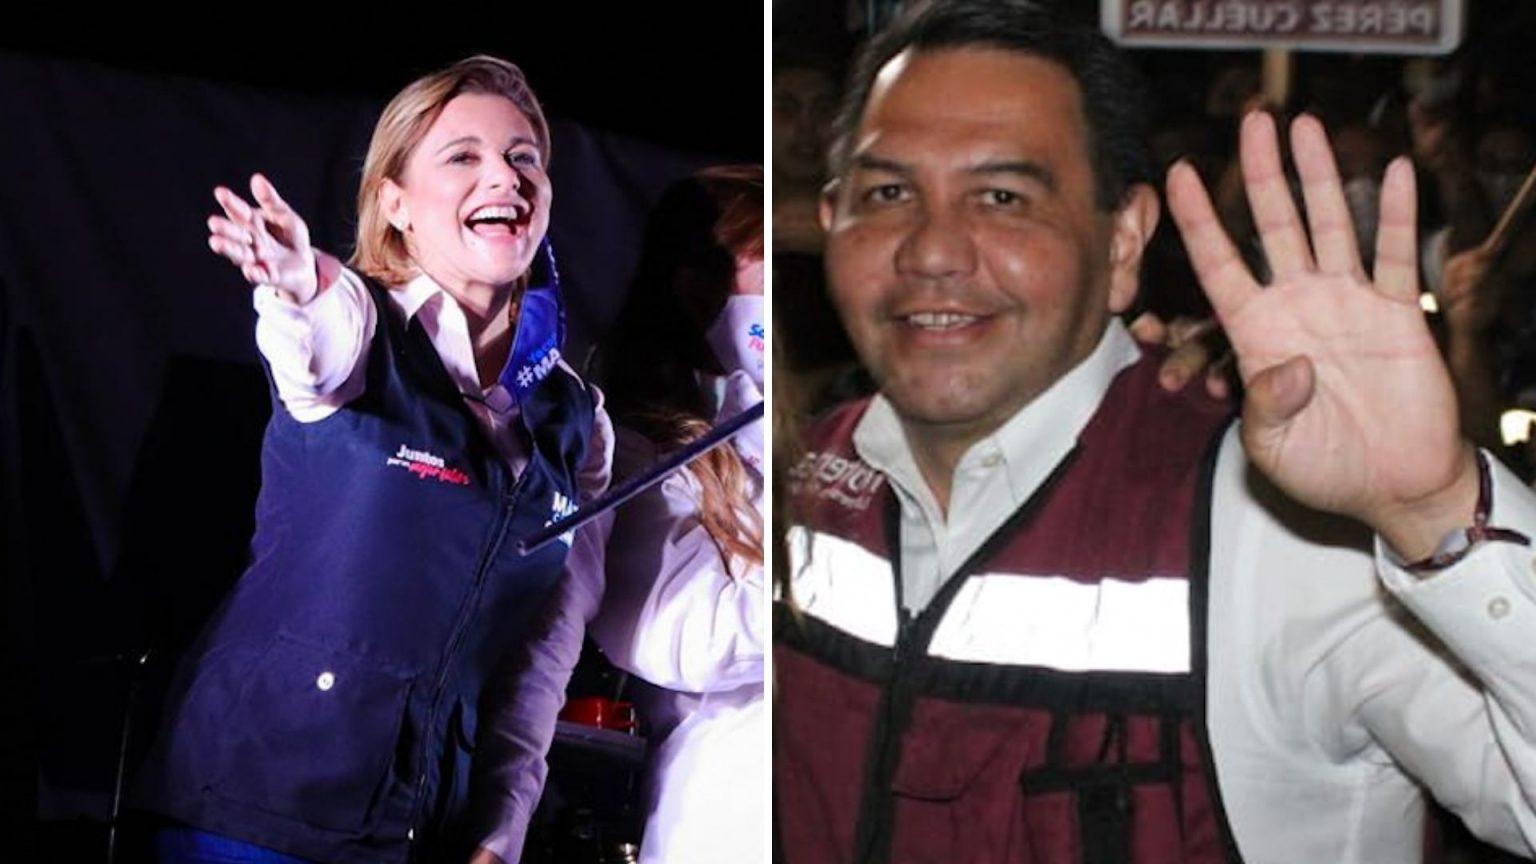 Maru Campos y Cruz Pérez, implicados en caso de sobornos de César Duarte, ganan su elección